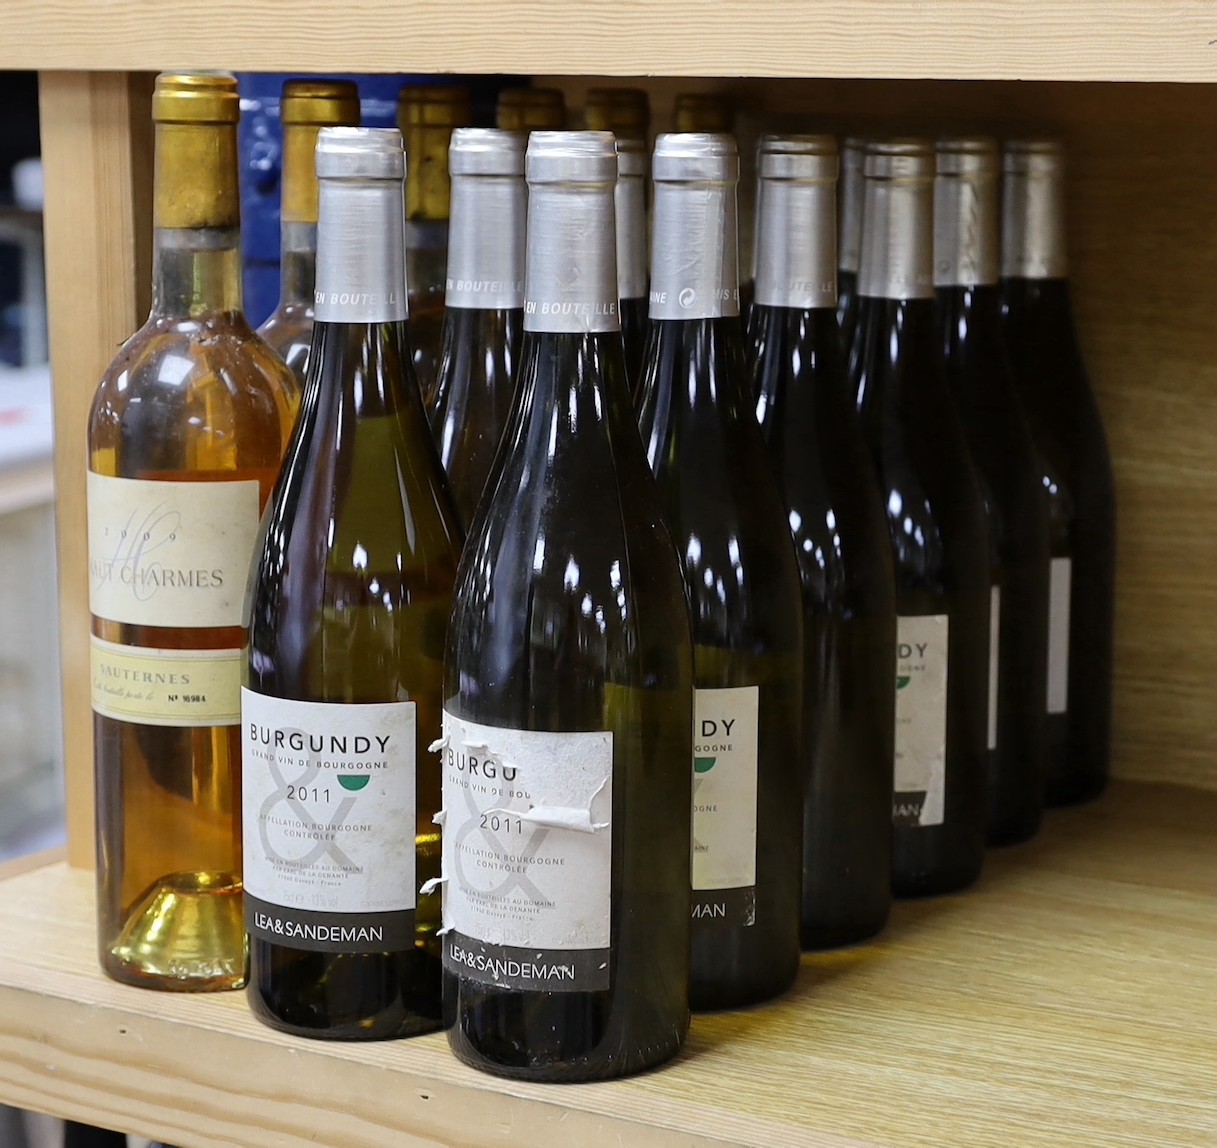 12 bottles of Burgundy Grand Vin De Bourgogne 2011 and 6 bottles of Haut Charmes 2009 (18)